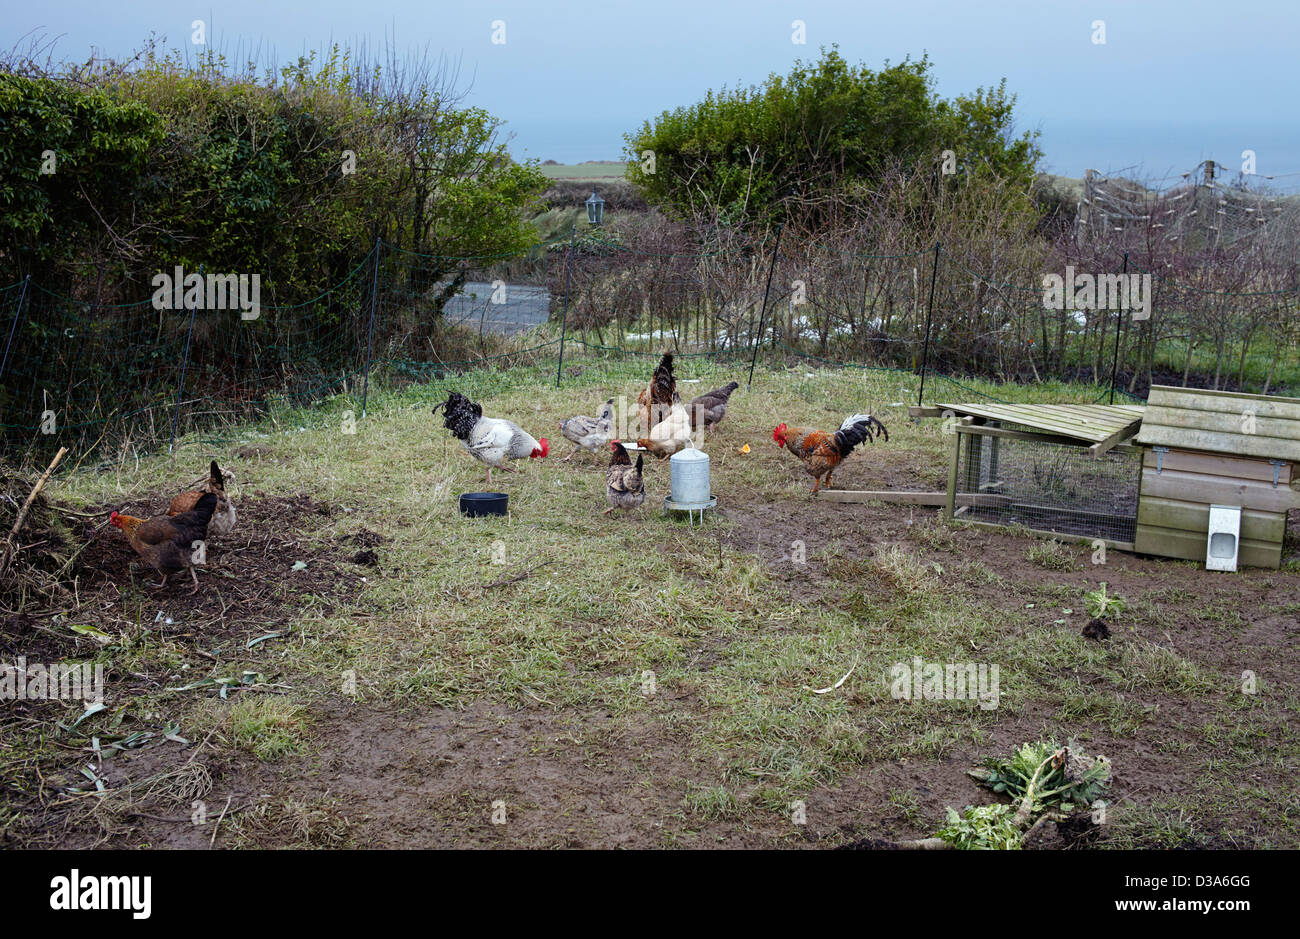 Hühnerhaltung im Freiland mit einem niedrigen Zaun Stockfoto